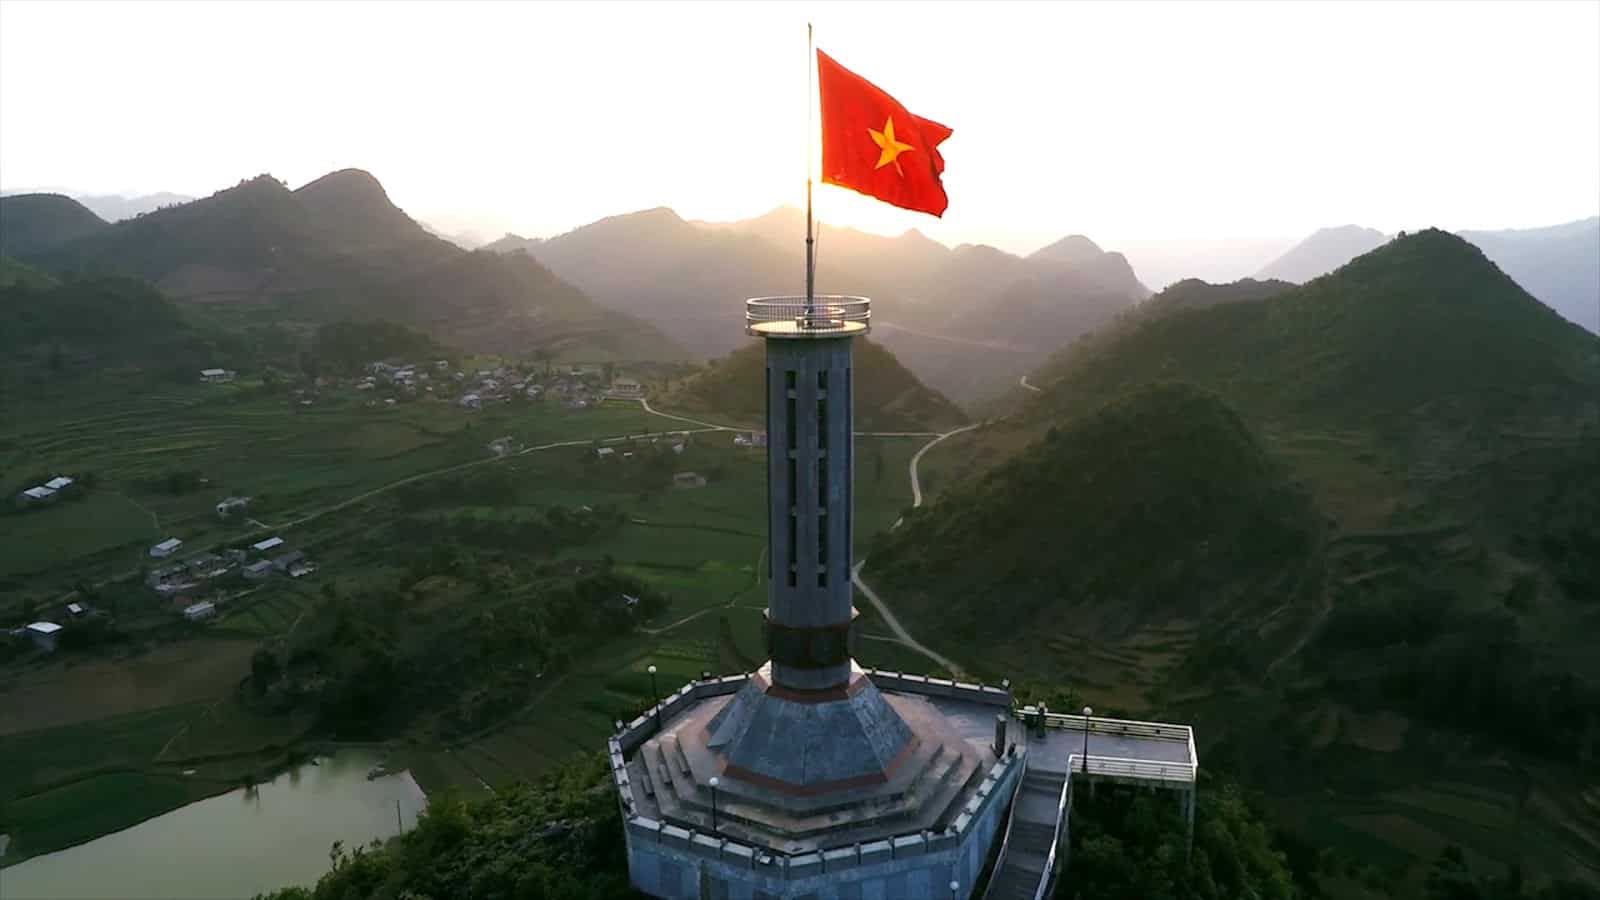 Lung Cu Flag Tower in Lung Cu Commune